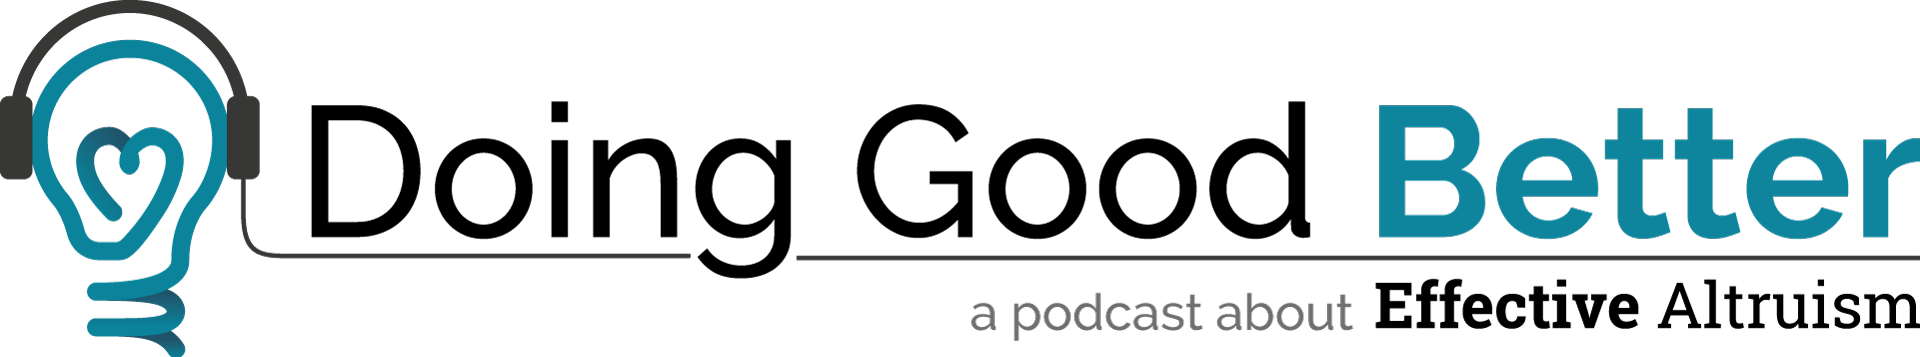 DGB-Podcast---Logo-Horizontal-Tagline